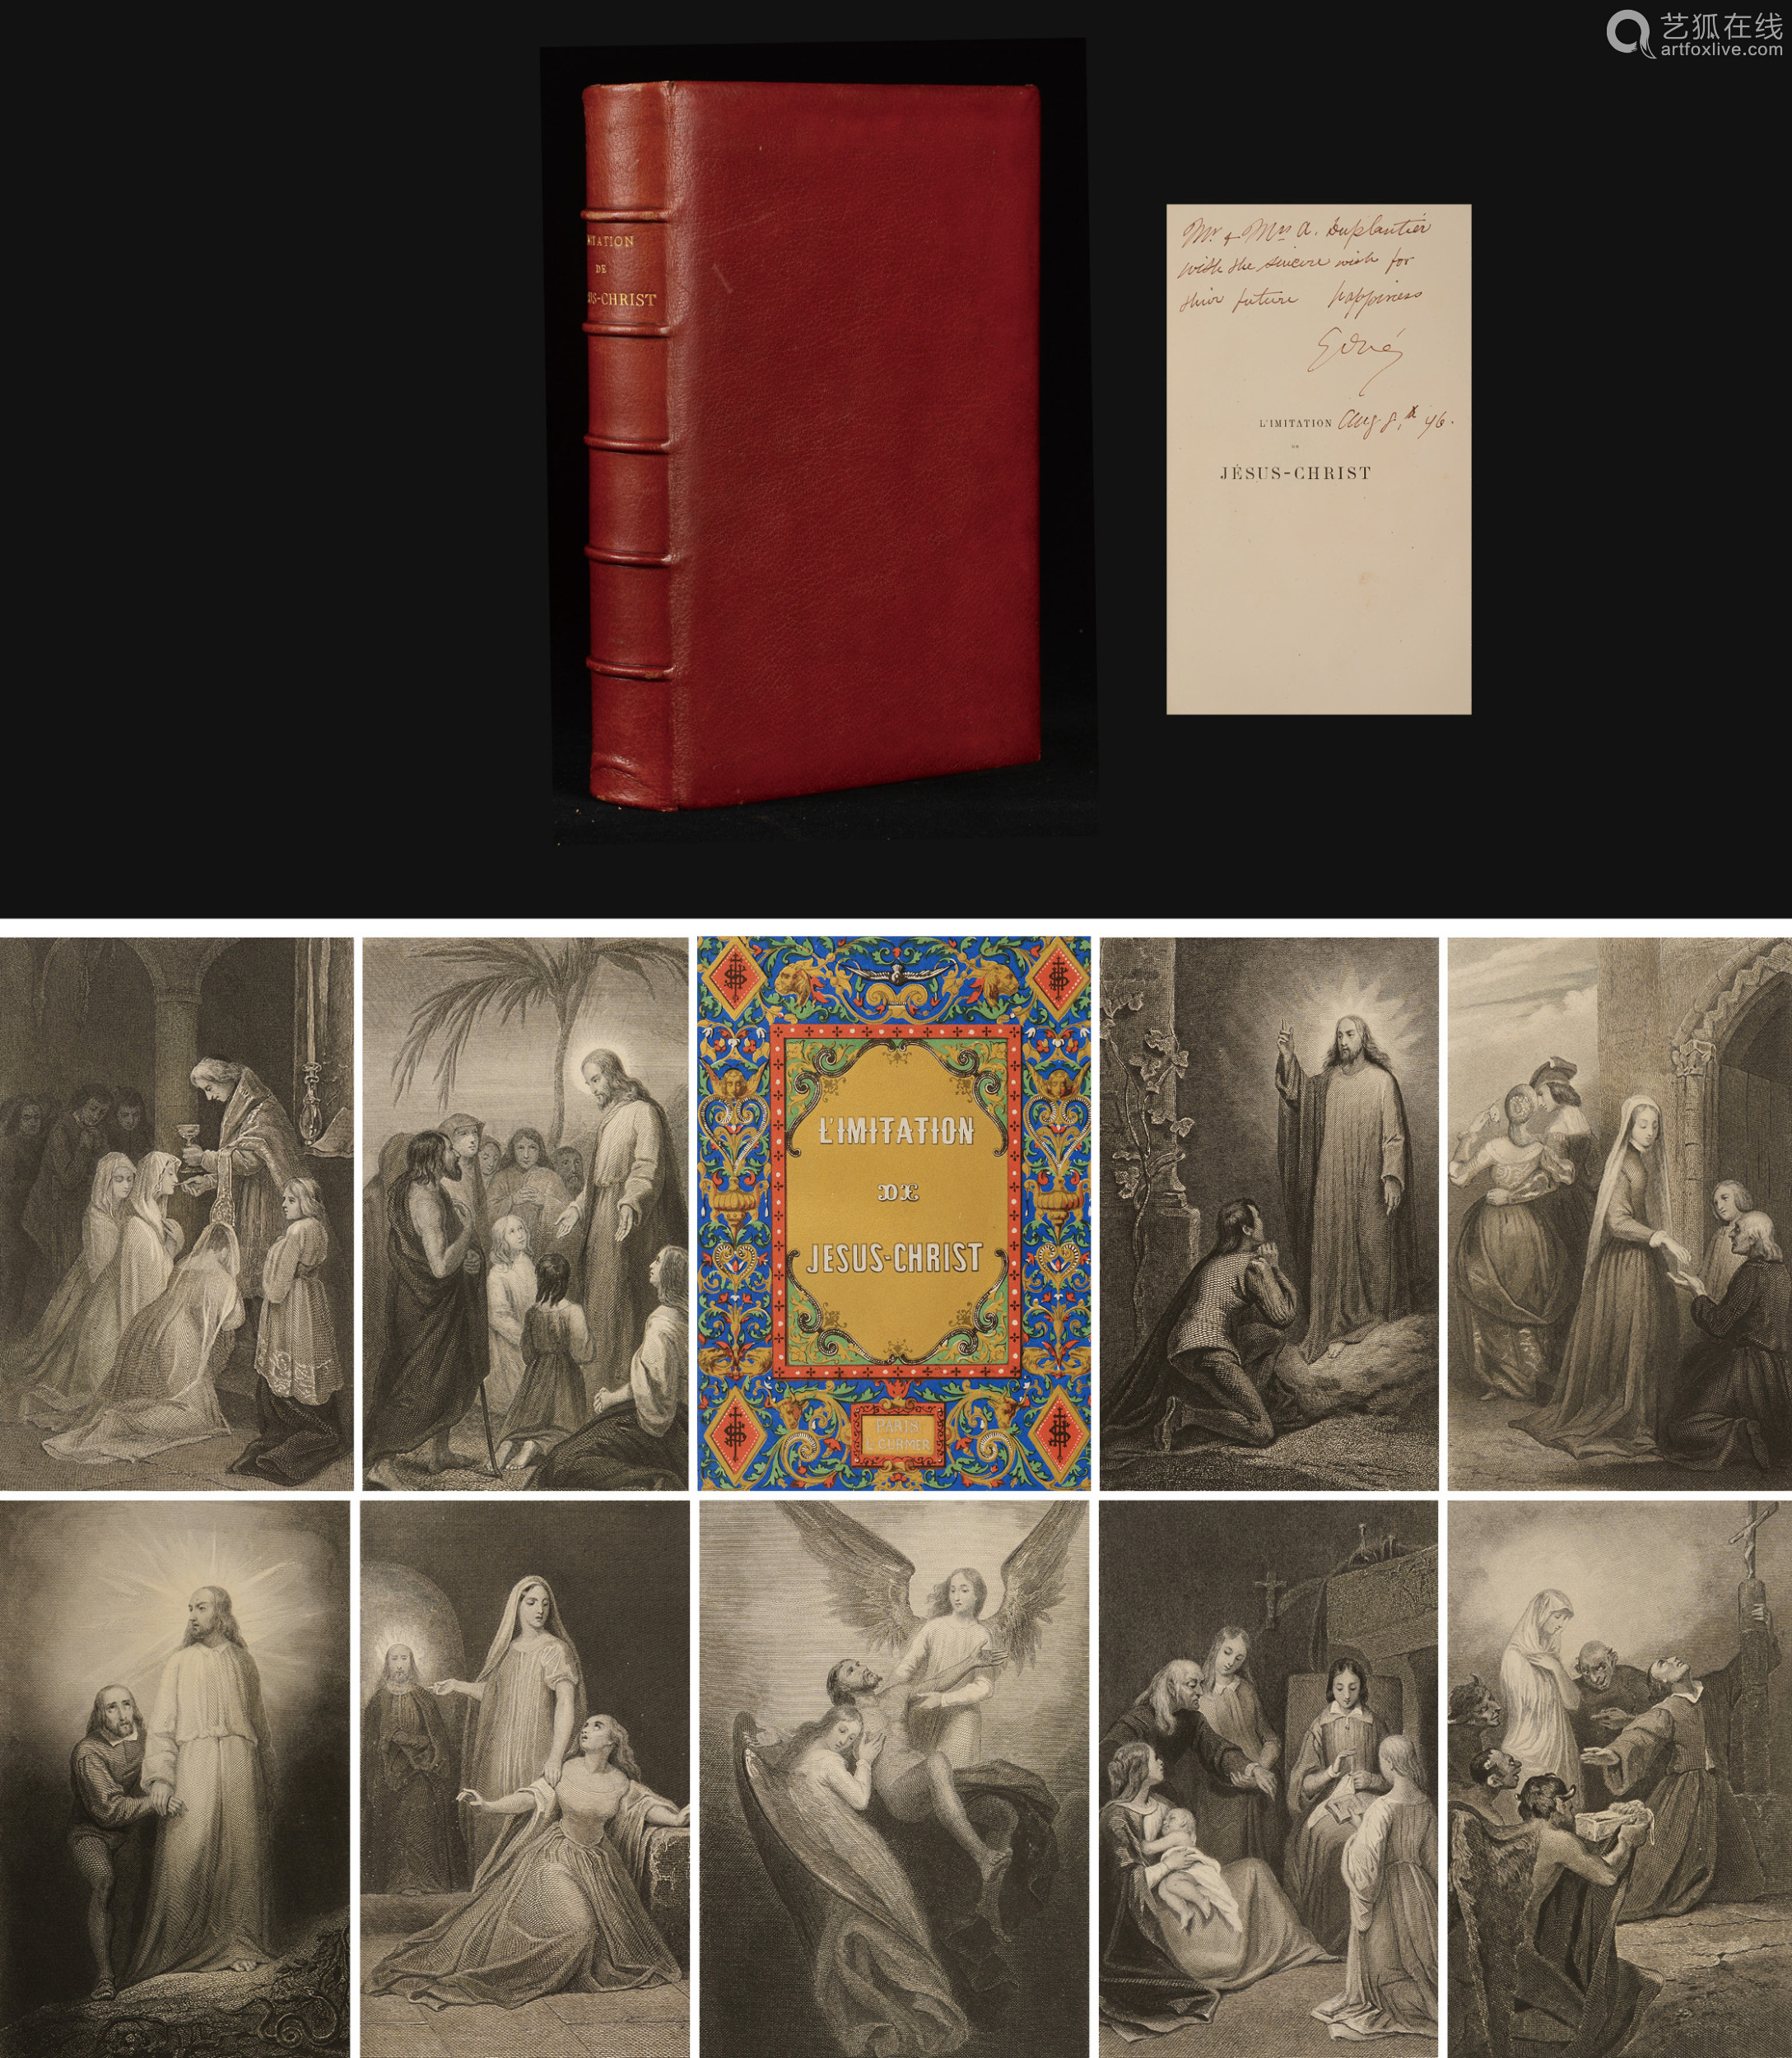 1865年法国巴黎加尔涅兄弟出版社出版 效法耶稣基督 红色摩洛哥小牛皮精装本一册 本书系19世纪法国著名版画家古斯塔夫 多雷于1876年8月8日亲笔签名 本 Deal Price Picture